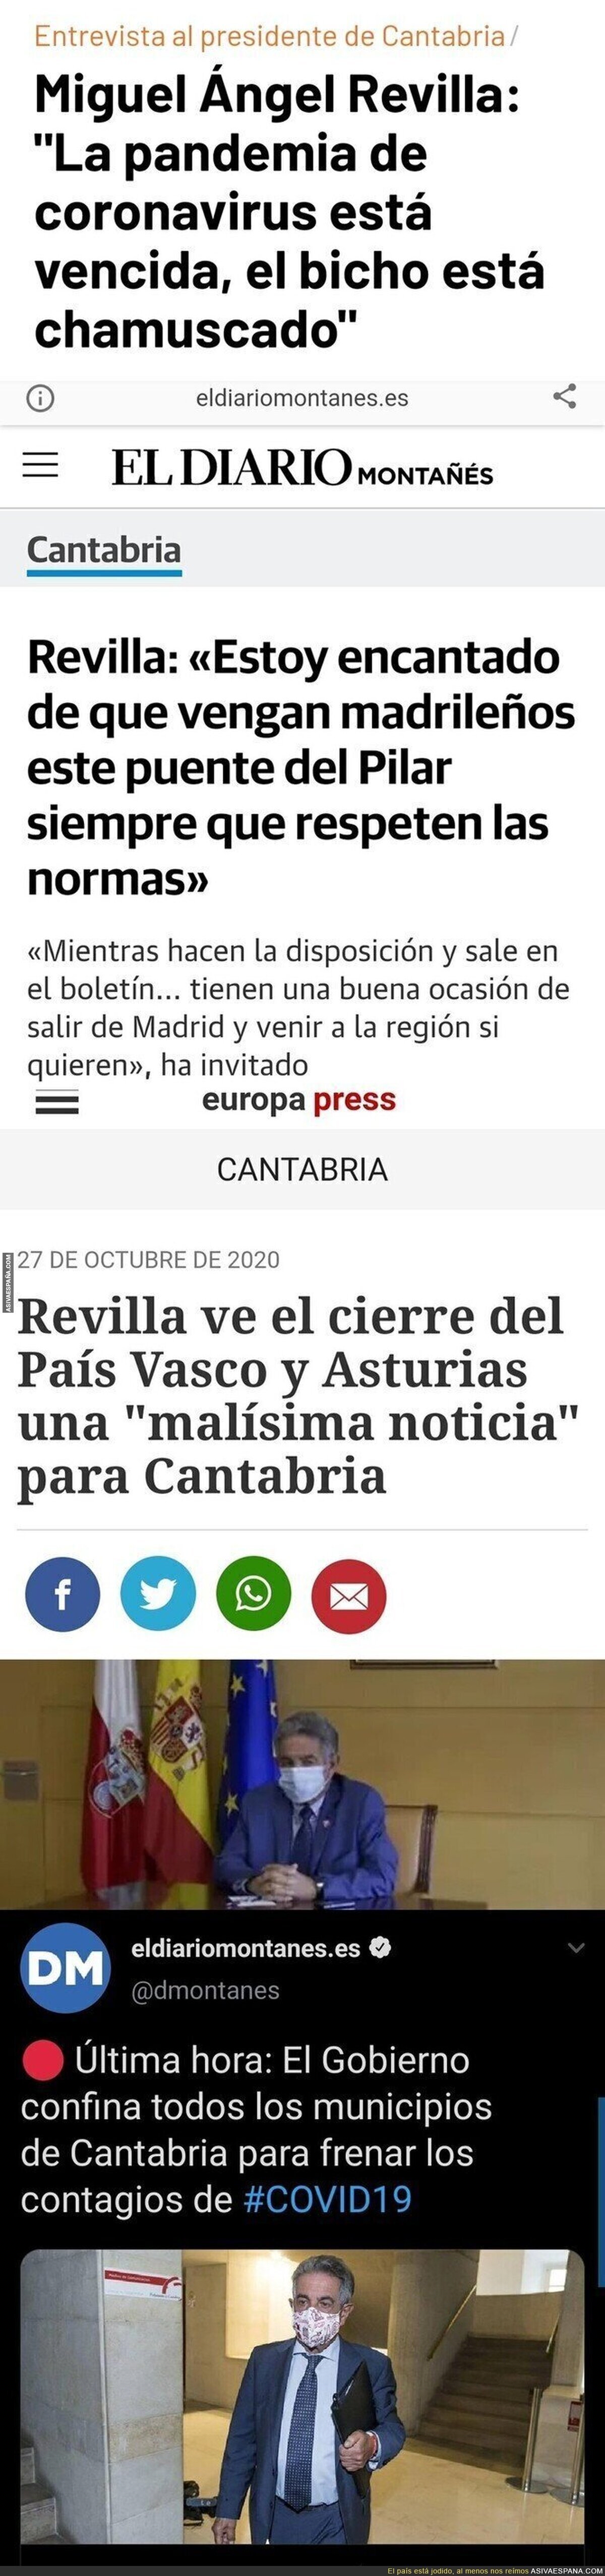 Drama total en Cantabria por todas estas noticias juntas